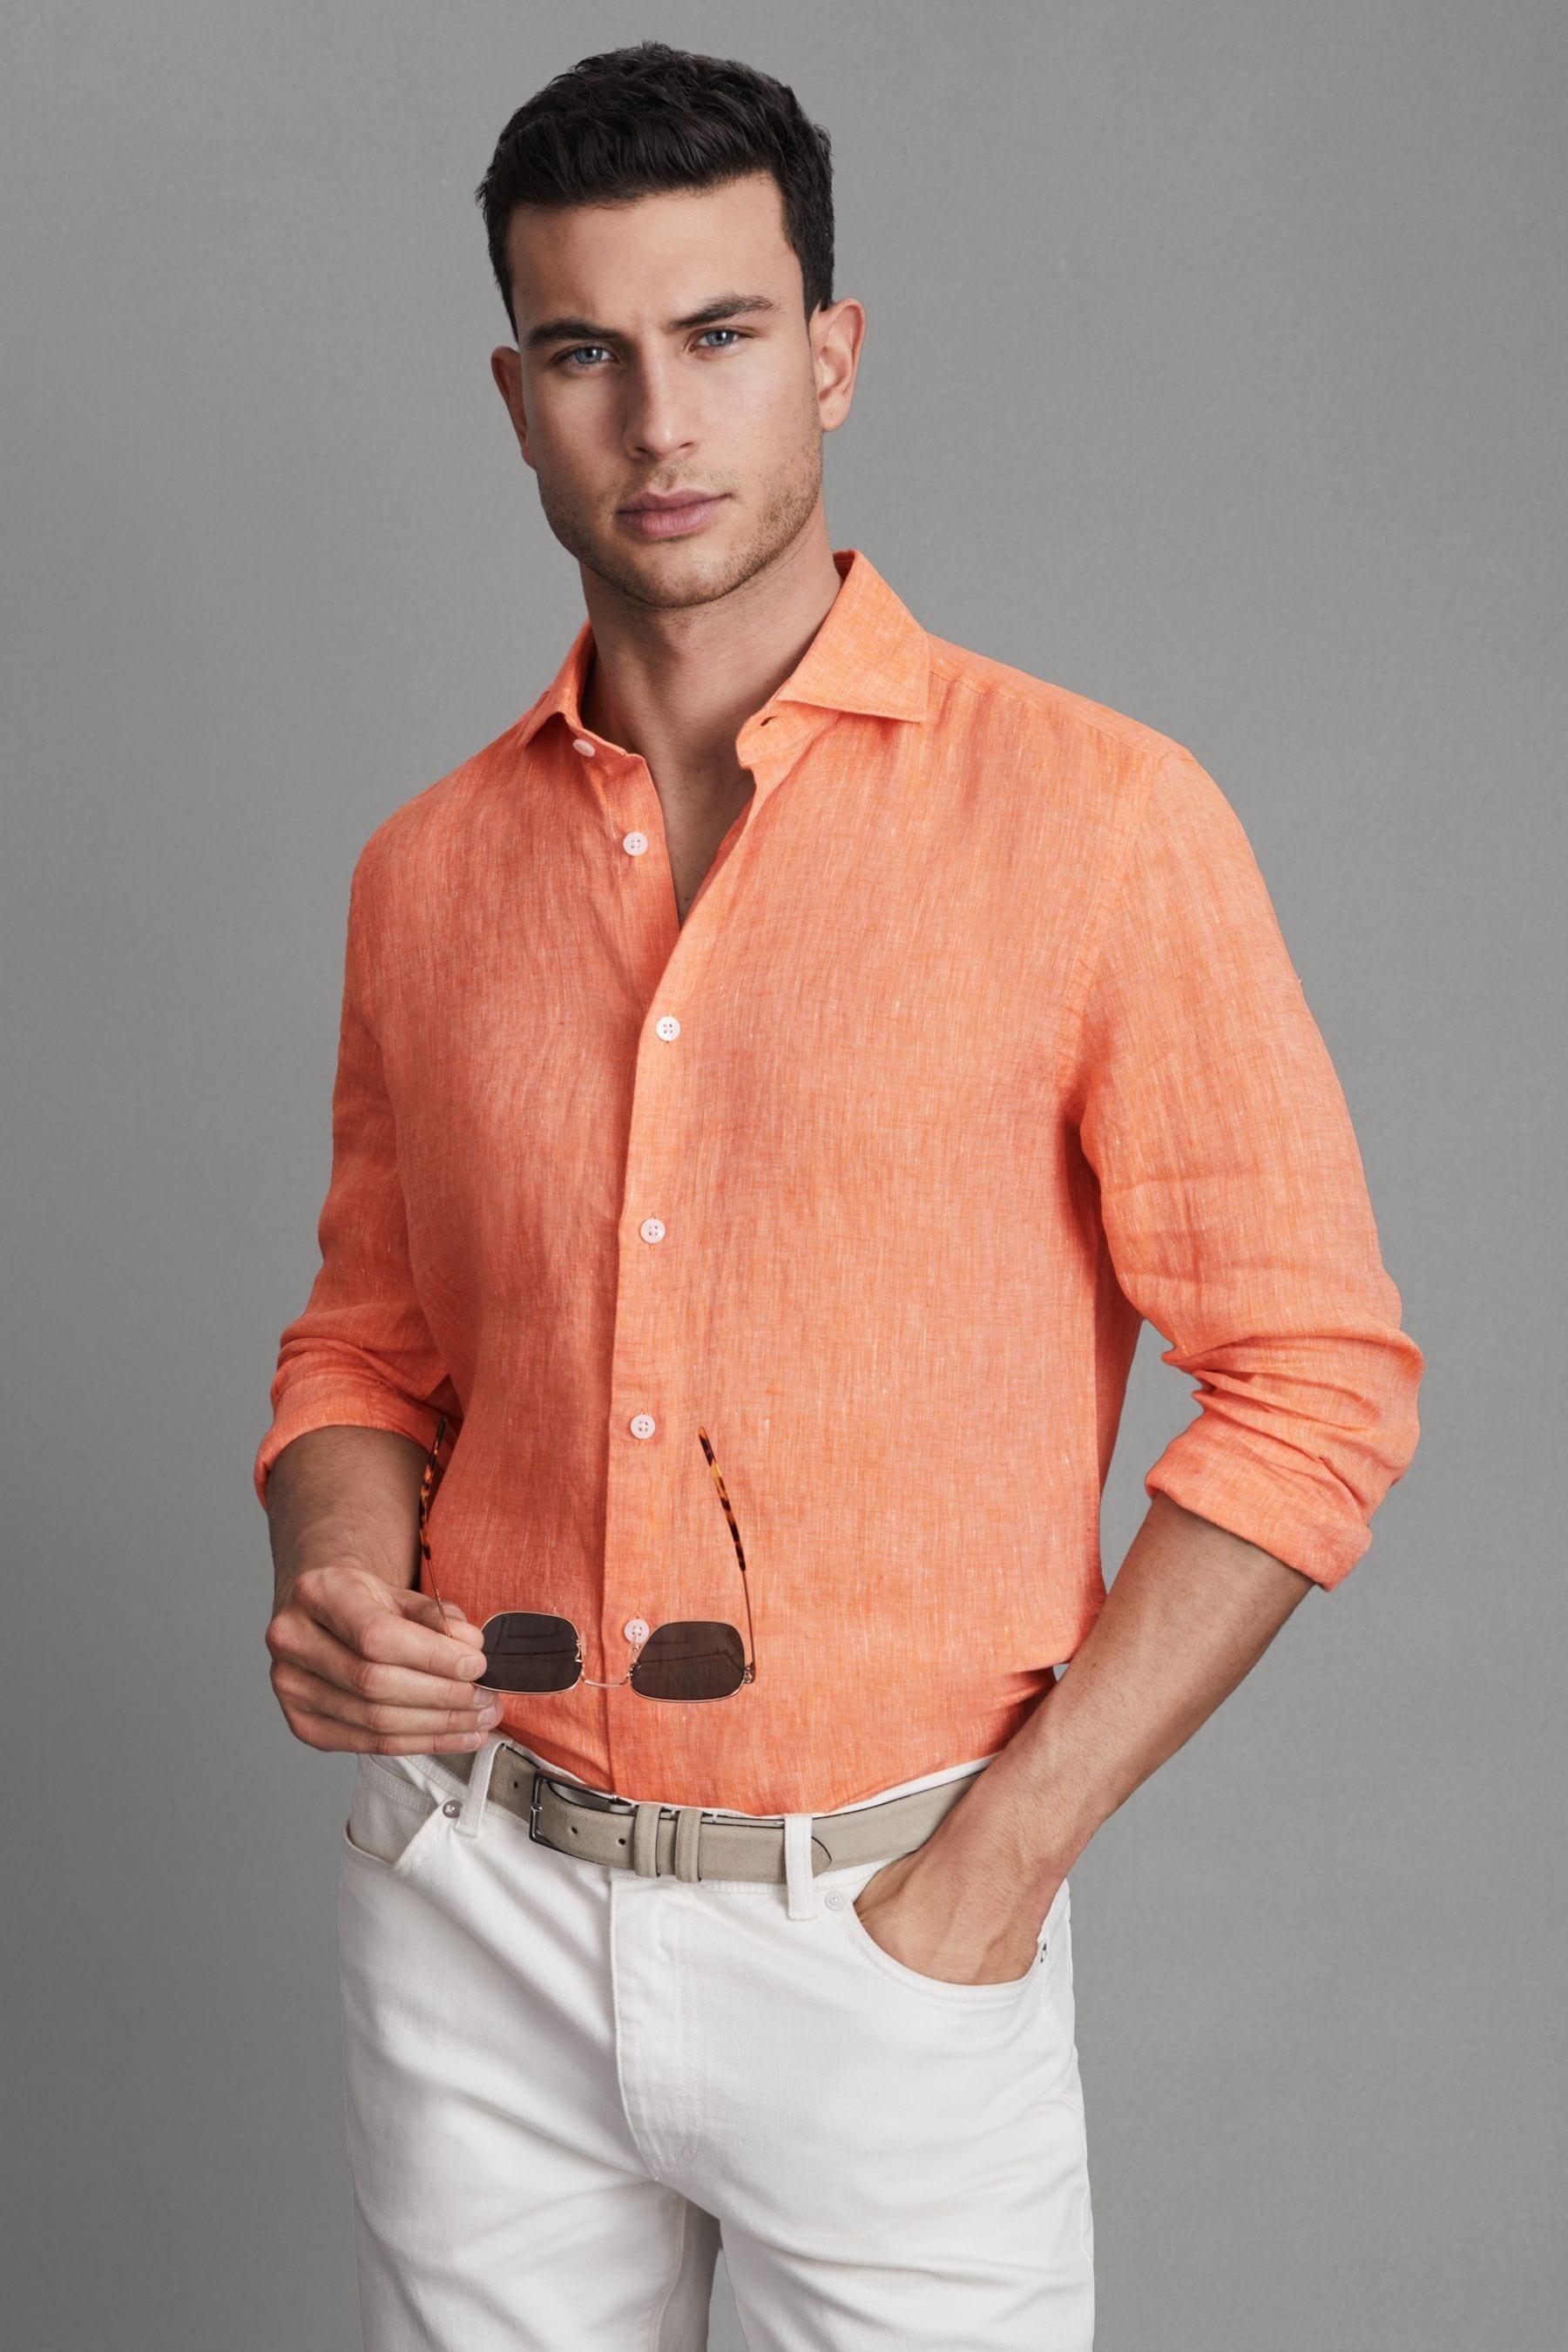 Reiss Ruban - Peach Linen Button-through Shirt, Xxl